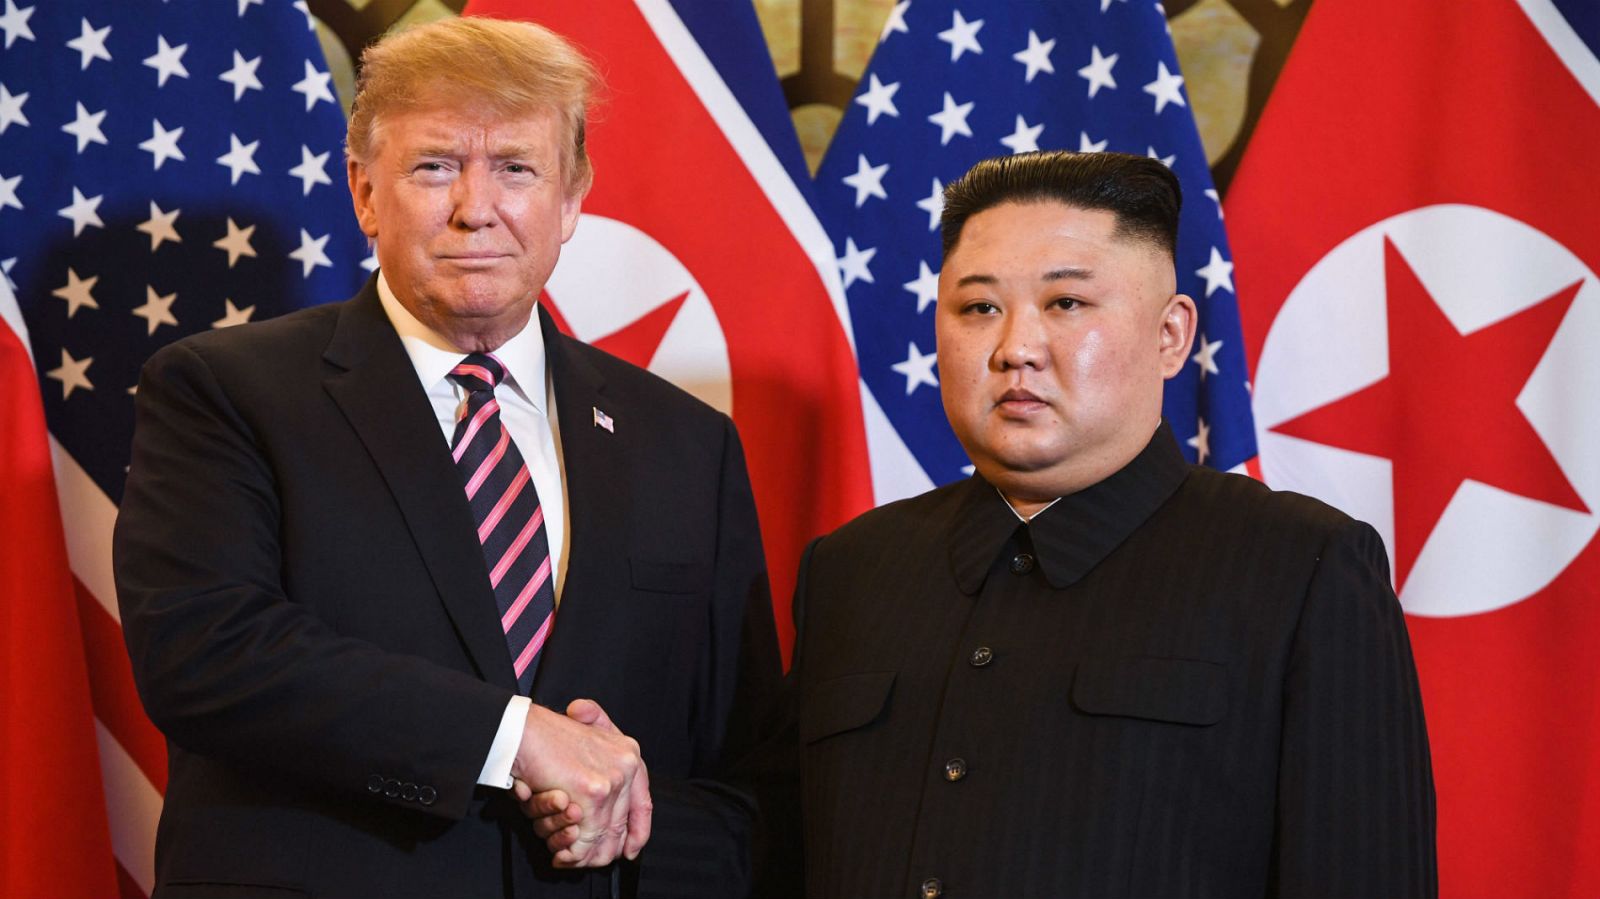 Los presidentes de Estados Unidos y Corea del Norte, Donald Trump y Kim Jong-un, se han reunido este miércoles en Hanói, la primera jornada de la segunda cumbre entre ambos países en los últimos ocho meses. Trump, que ha alabado en Vietnam el "potencial económico" del país de su interlocutor ha asegurado que está dispuesto a ayudar a Pyonyang si prosperan las negociaciones para desnuclearizar el país. 